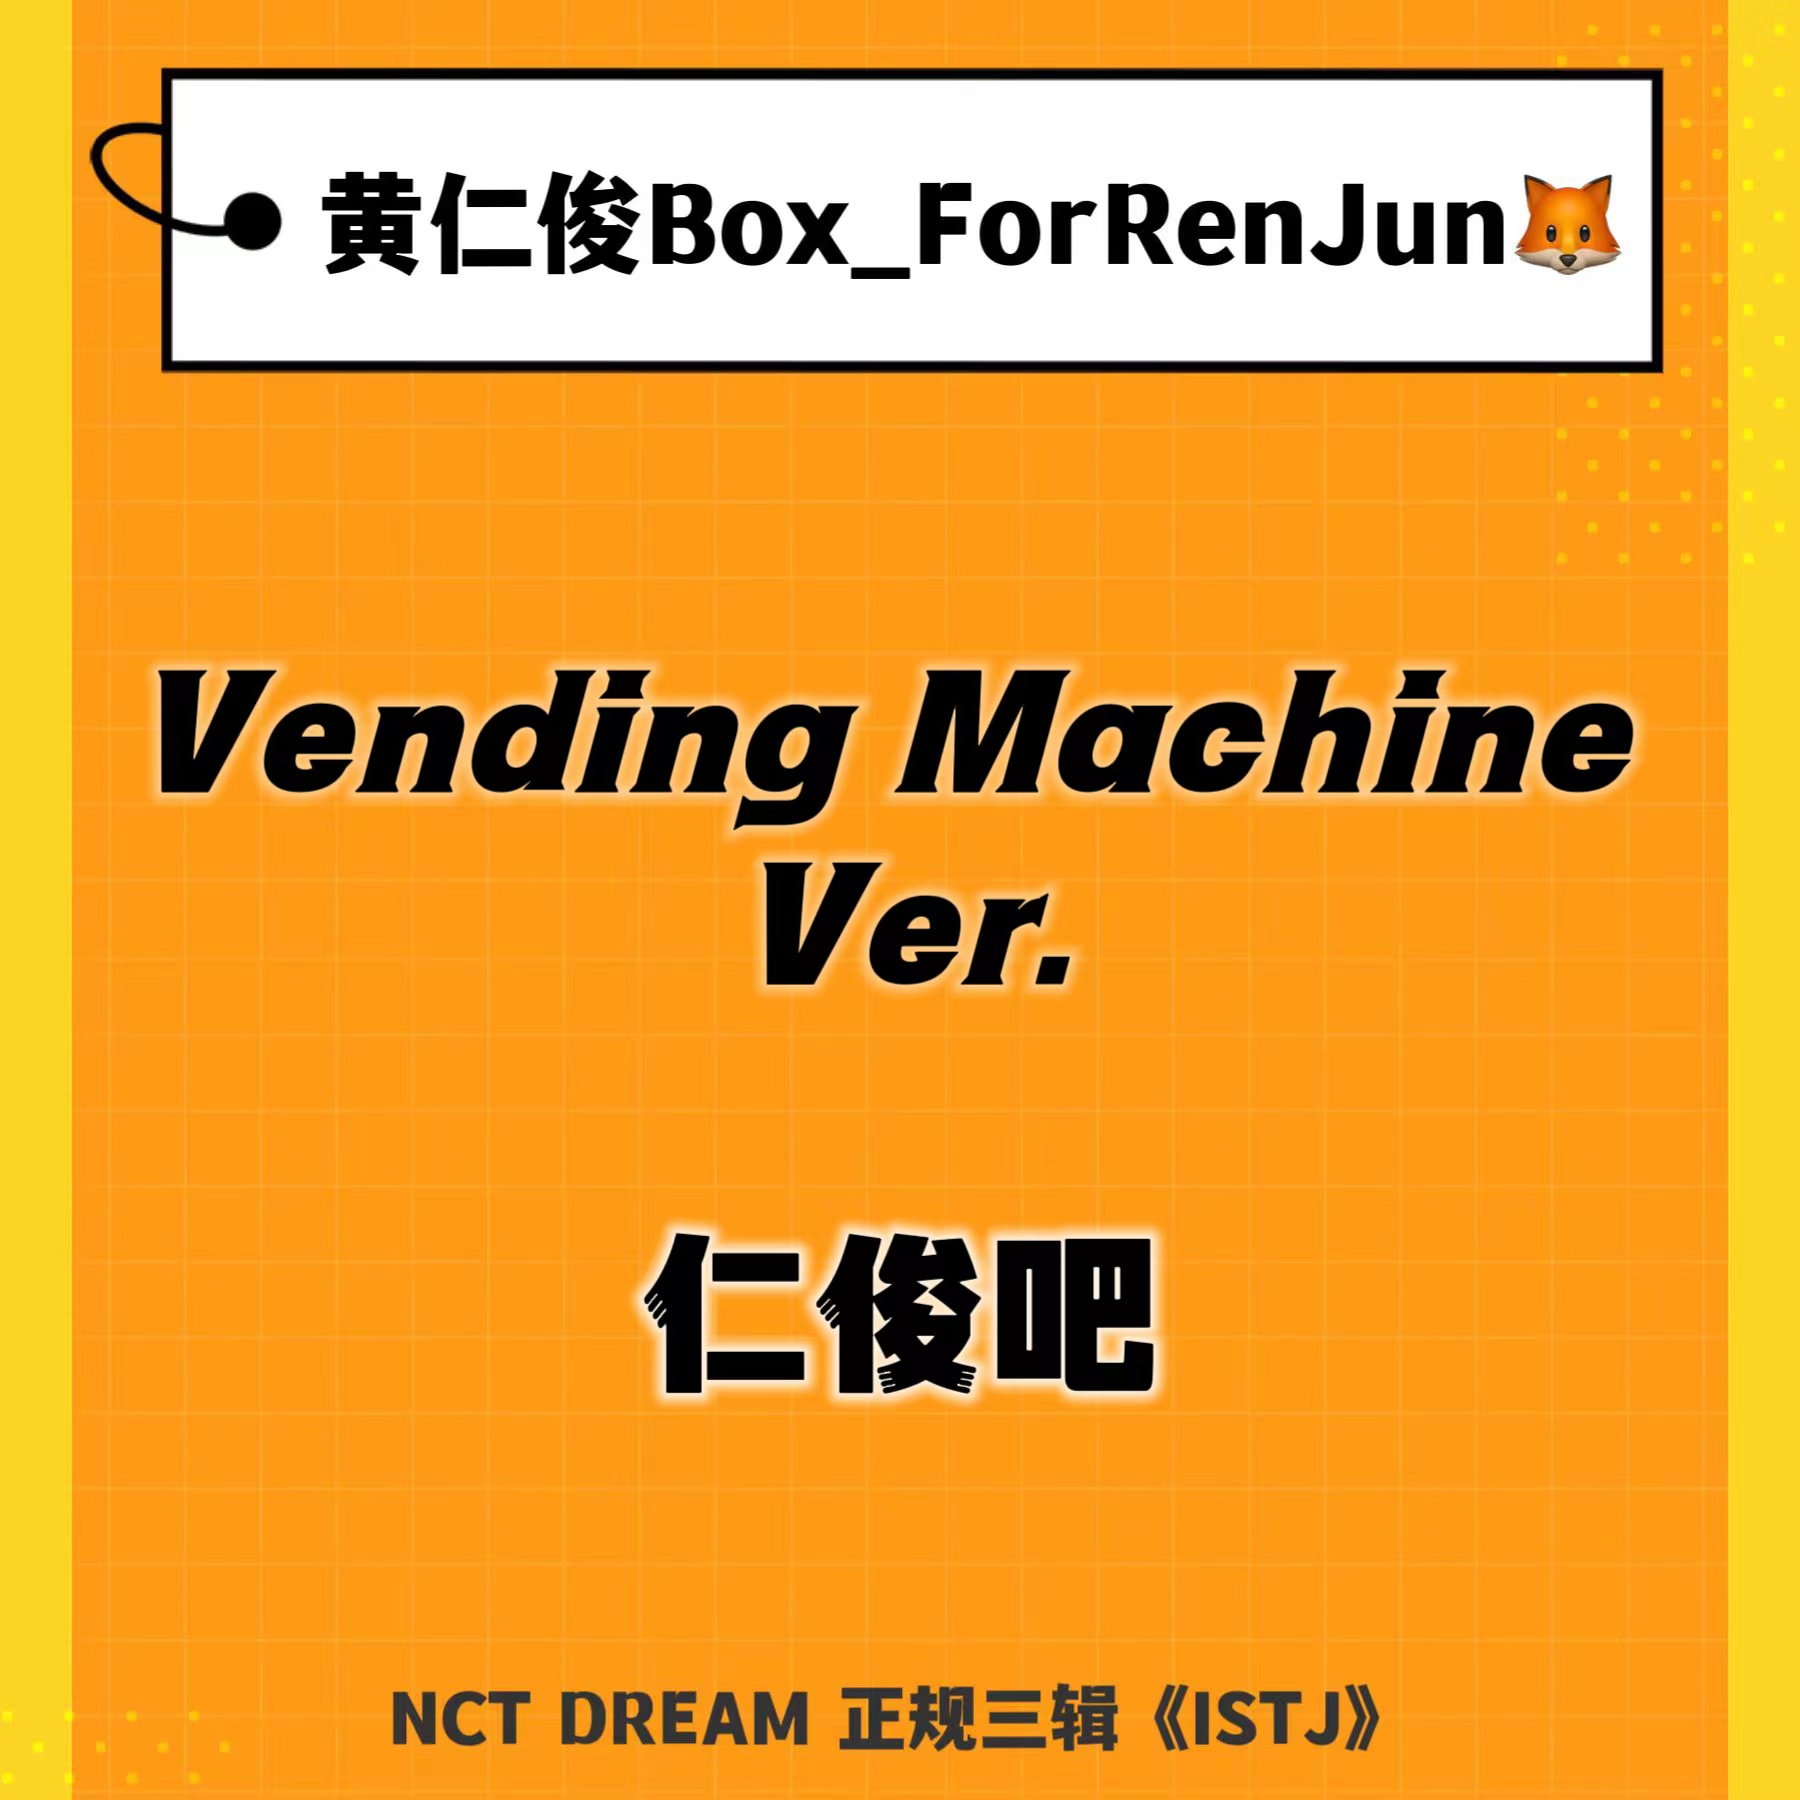 [全款 裸专] NCT DREAM - 正规3辑 [ISTJ] (Vending Machine Ver.)_黄仁俊吧RenJunBar